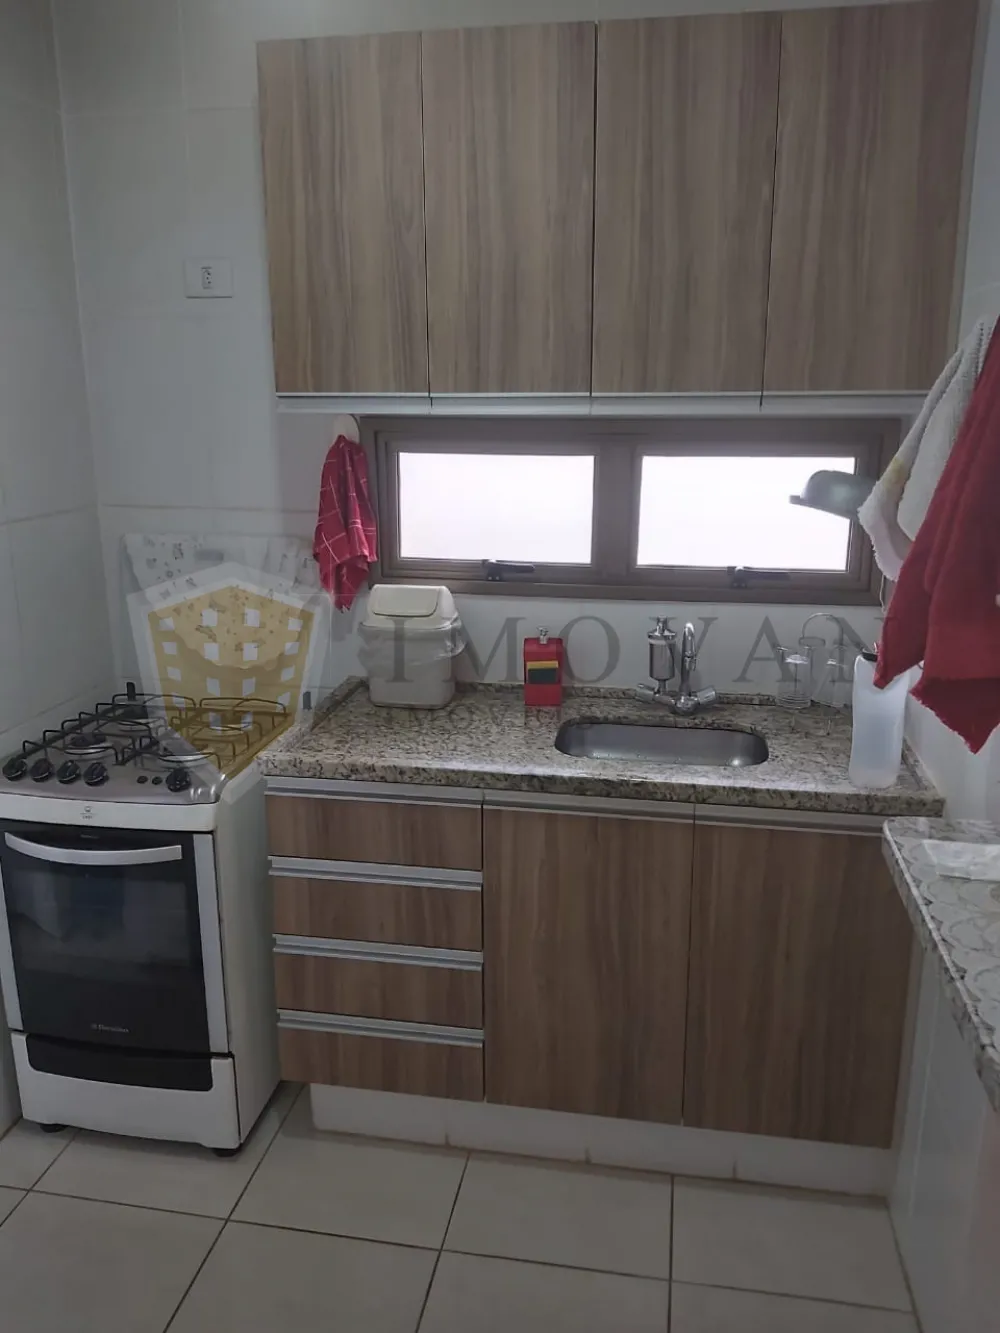 Comprar Apartamento / Padrão em Ribeirão Preto R$ 220.000,00 - Foto 14